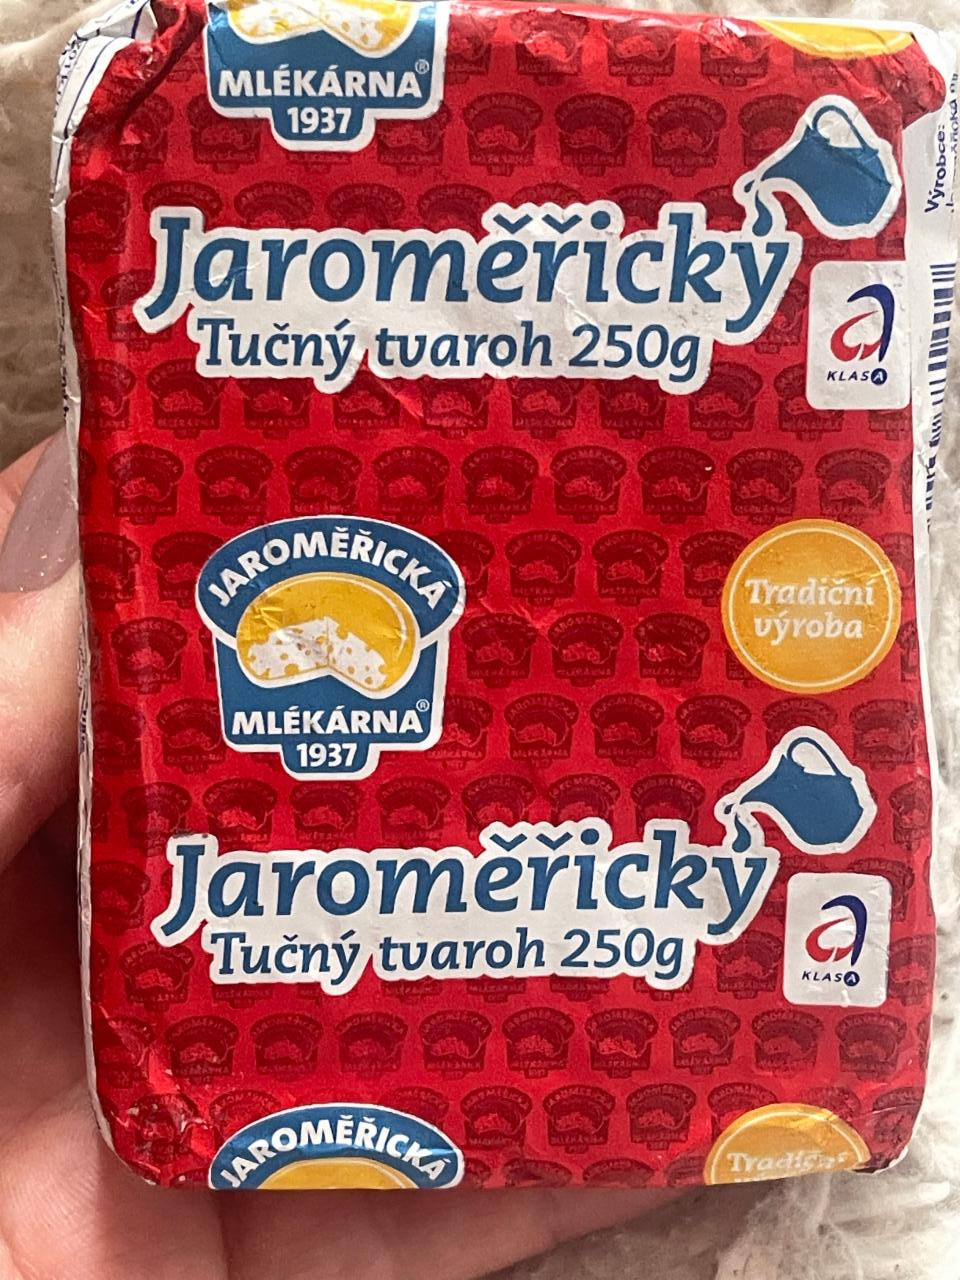 Фото - Jaroměřicky Tučný tvaroh Jaroměřická mlékárna